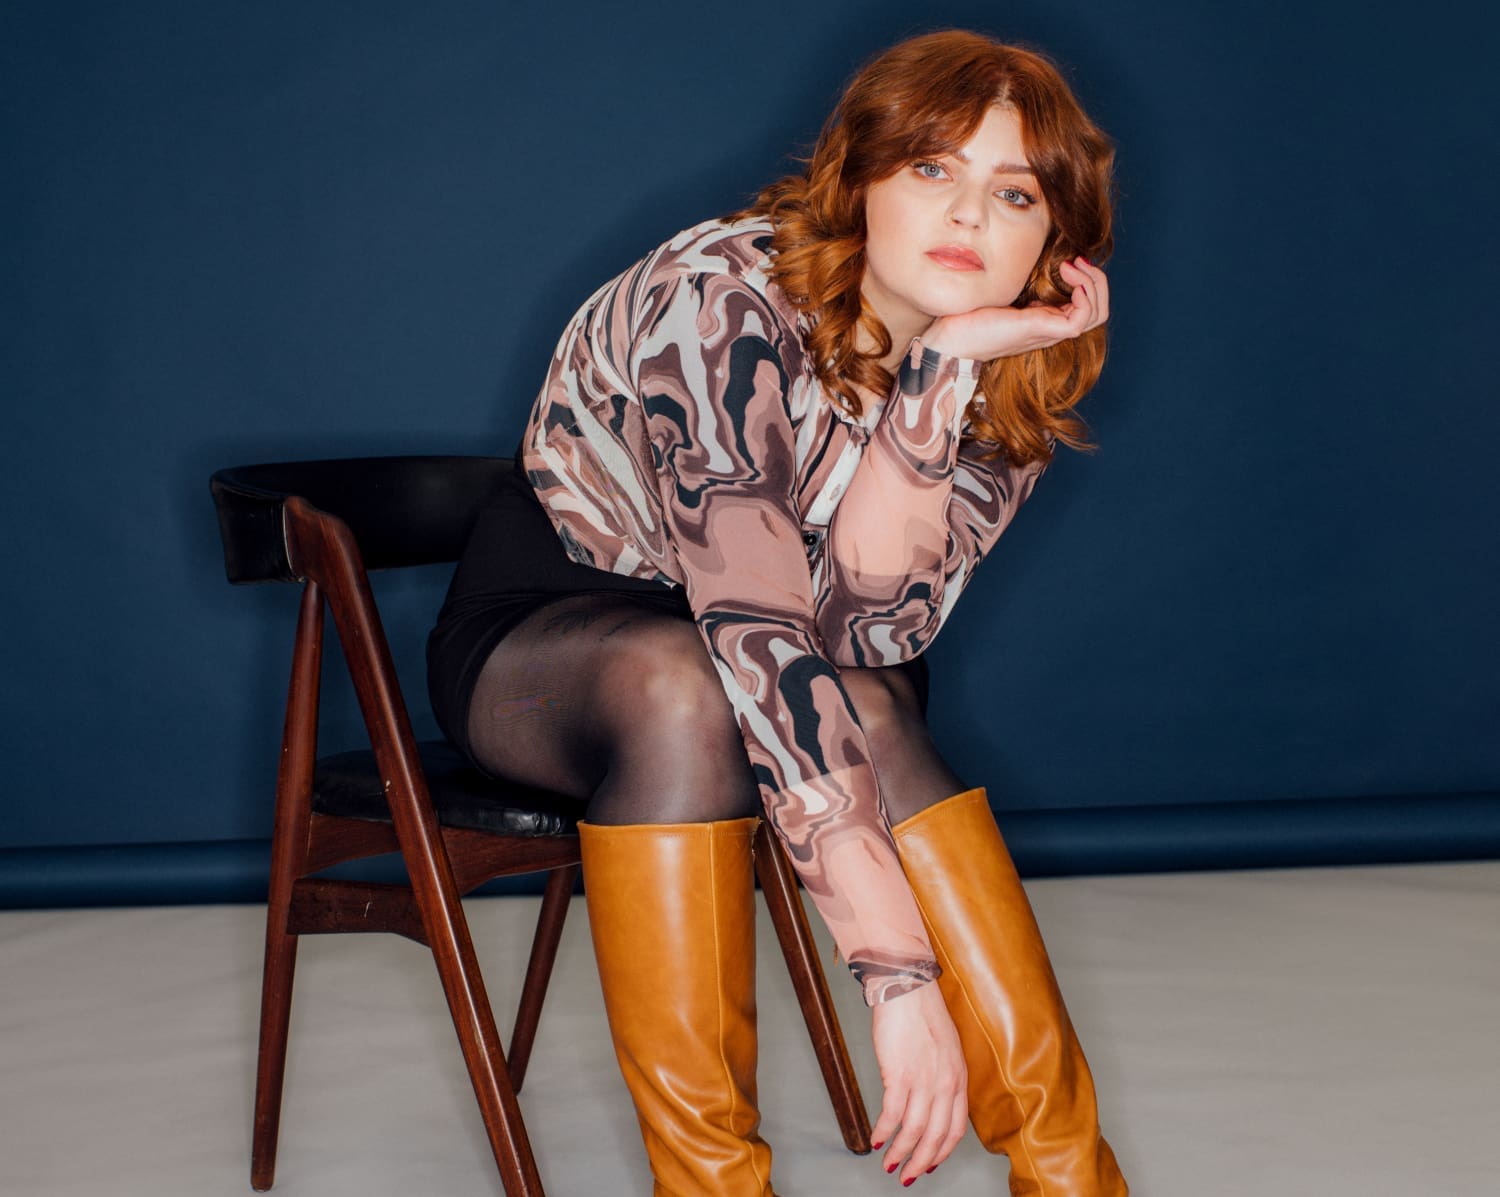 Autorin Sophie Passmann im Portrait auf einem Sessel sitzend